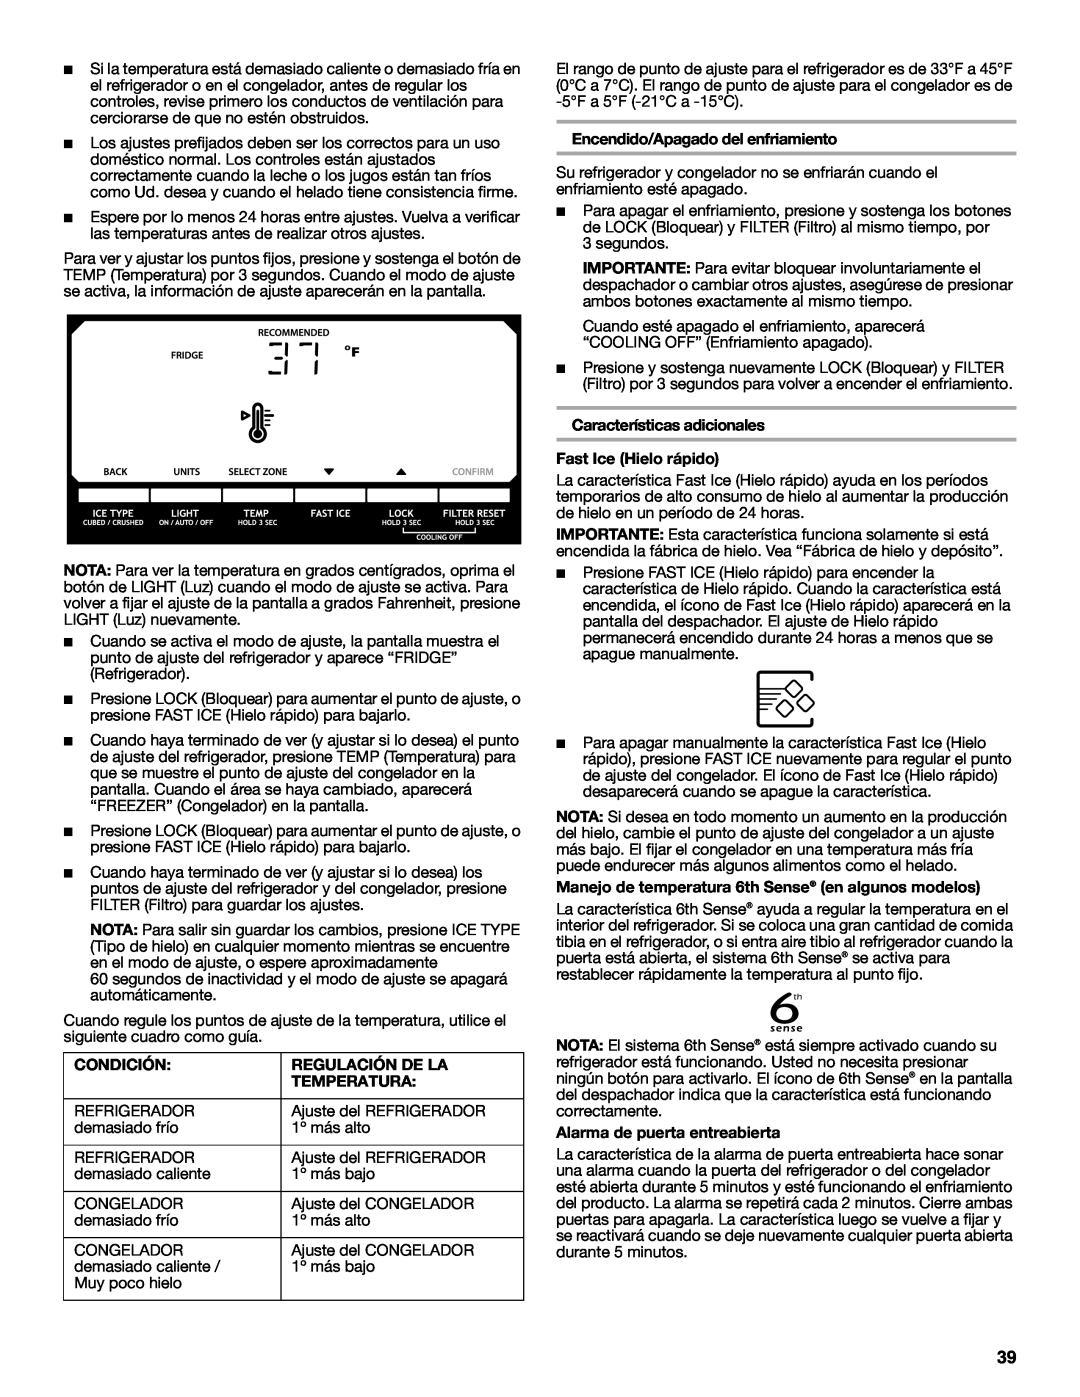 Whirlpool W10632883A installation instructions Condición, Regulación De La, Temperatura, Encendido/Apagado del enfriamiento 